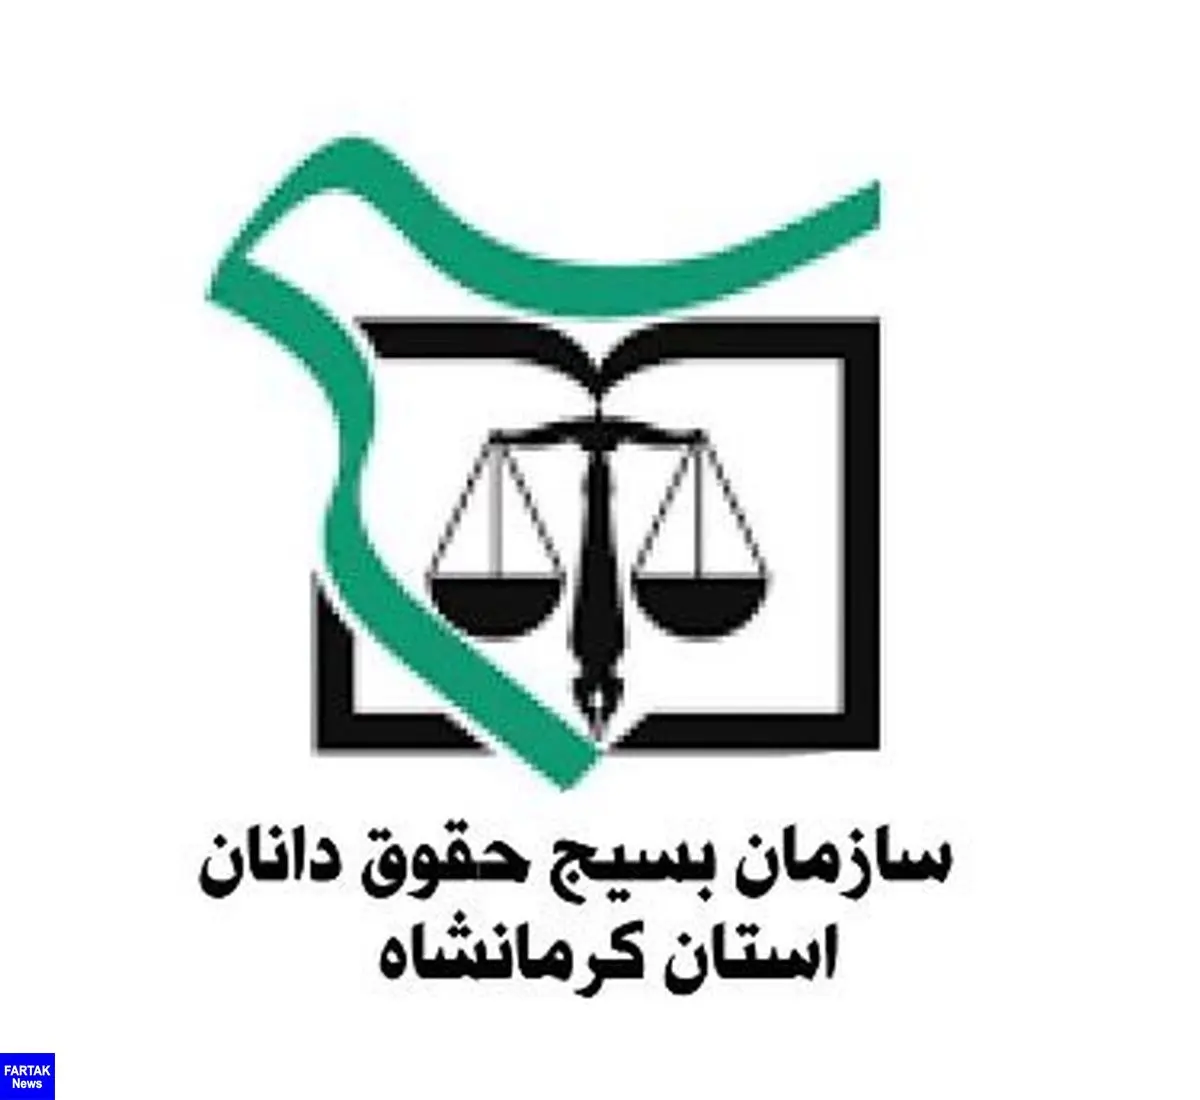 بیانیه حقوق دانان بسیجی و انقلابی  استان کرمانشاه